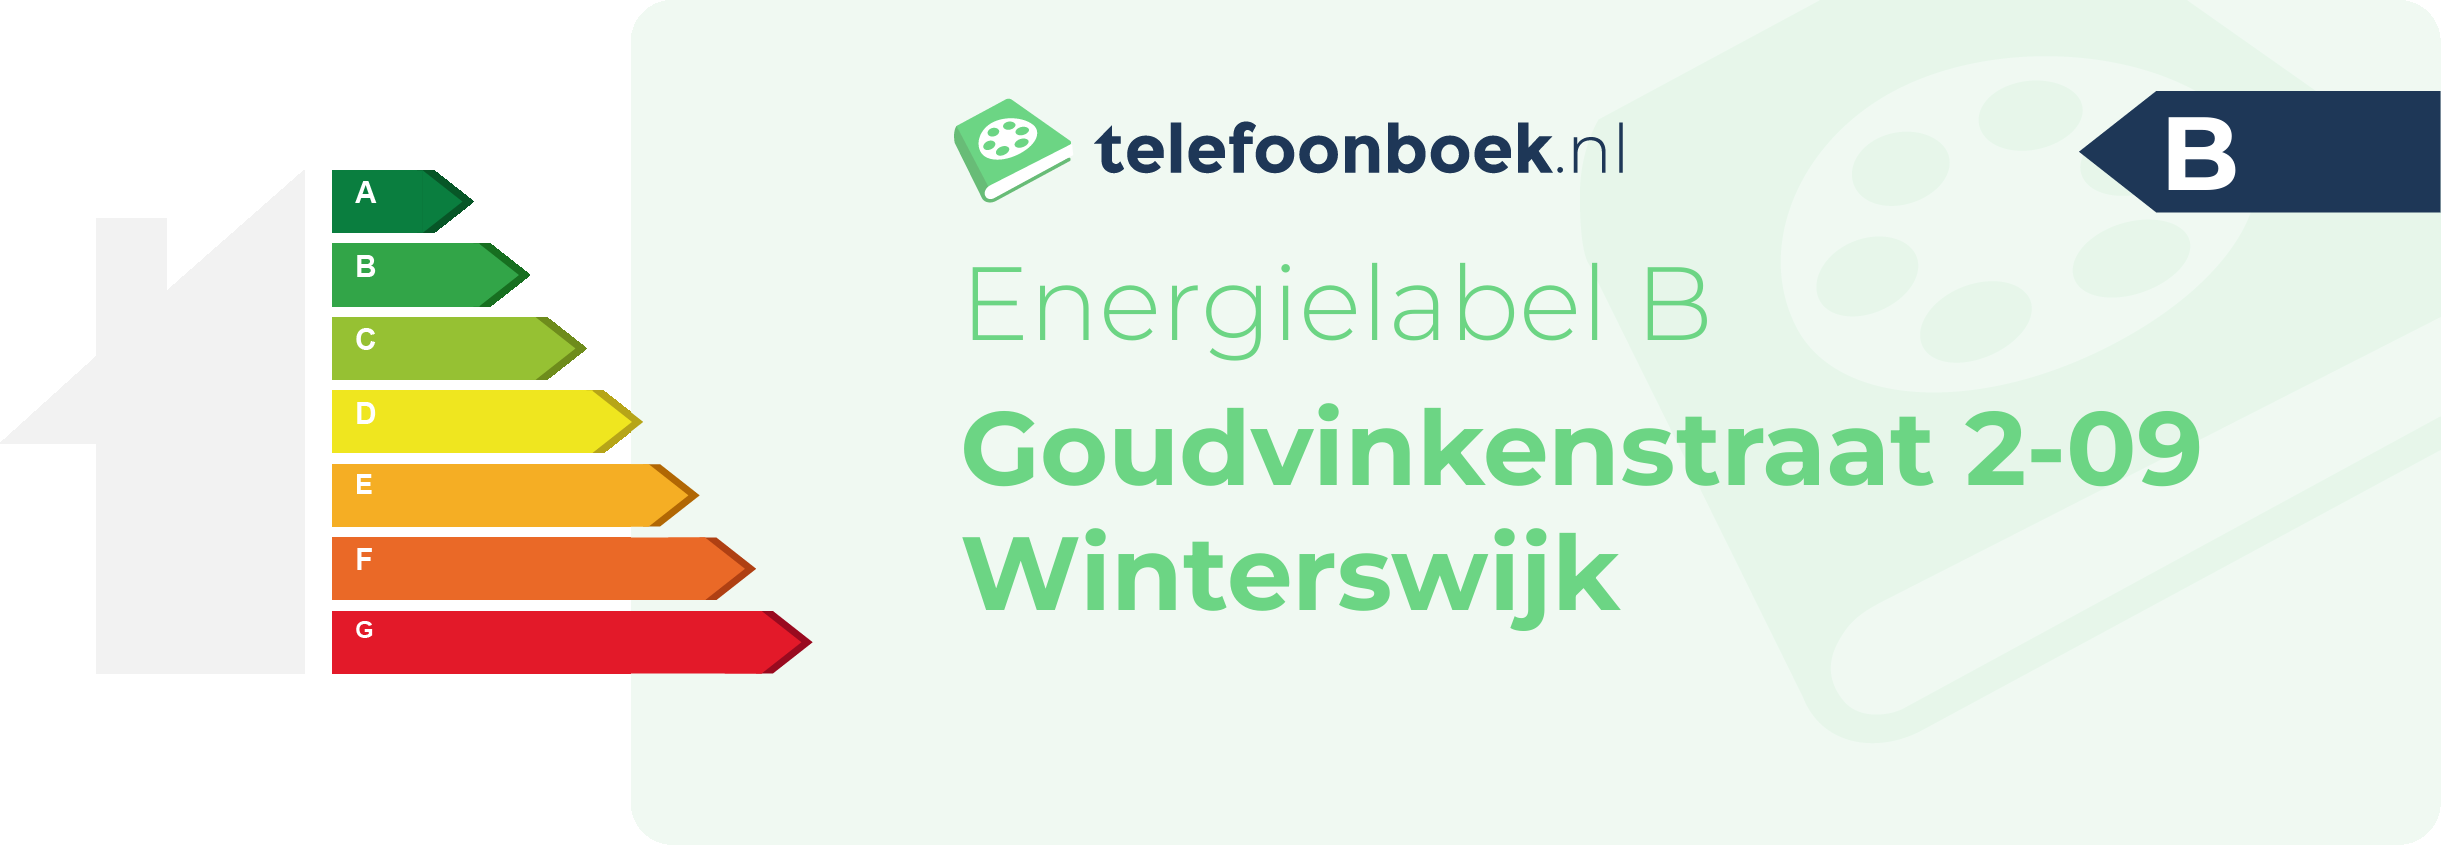 Energielabel Goudvinkenstraat 2-09 Winterswijk